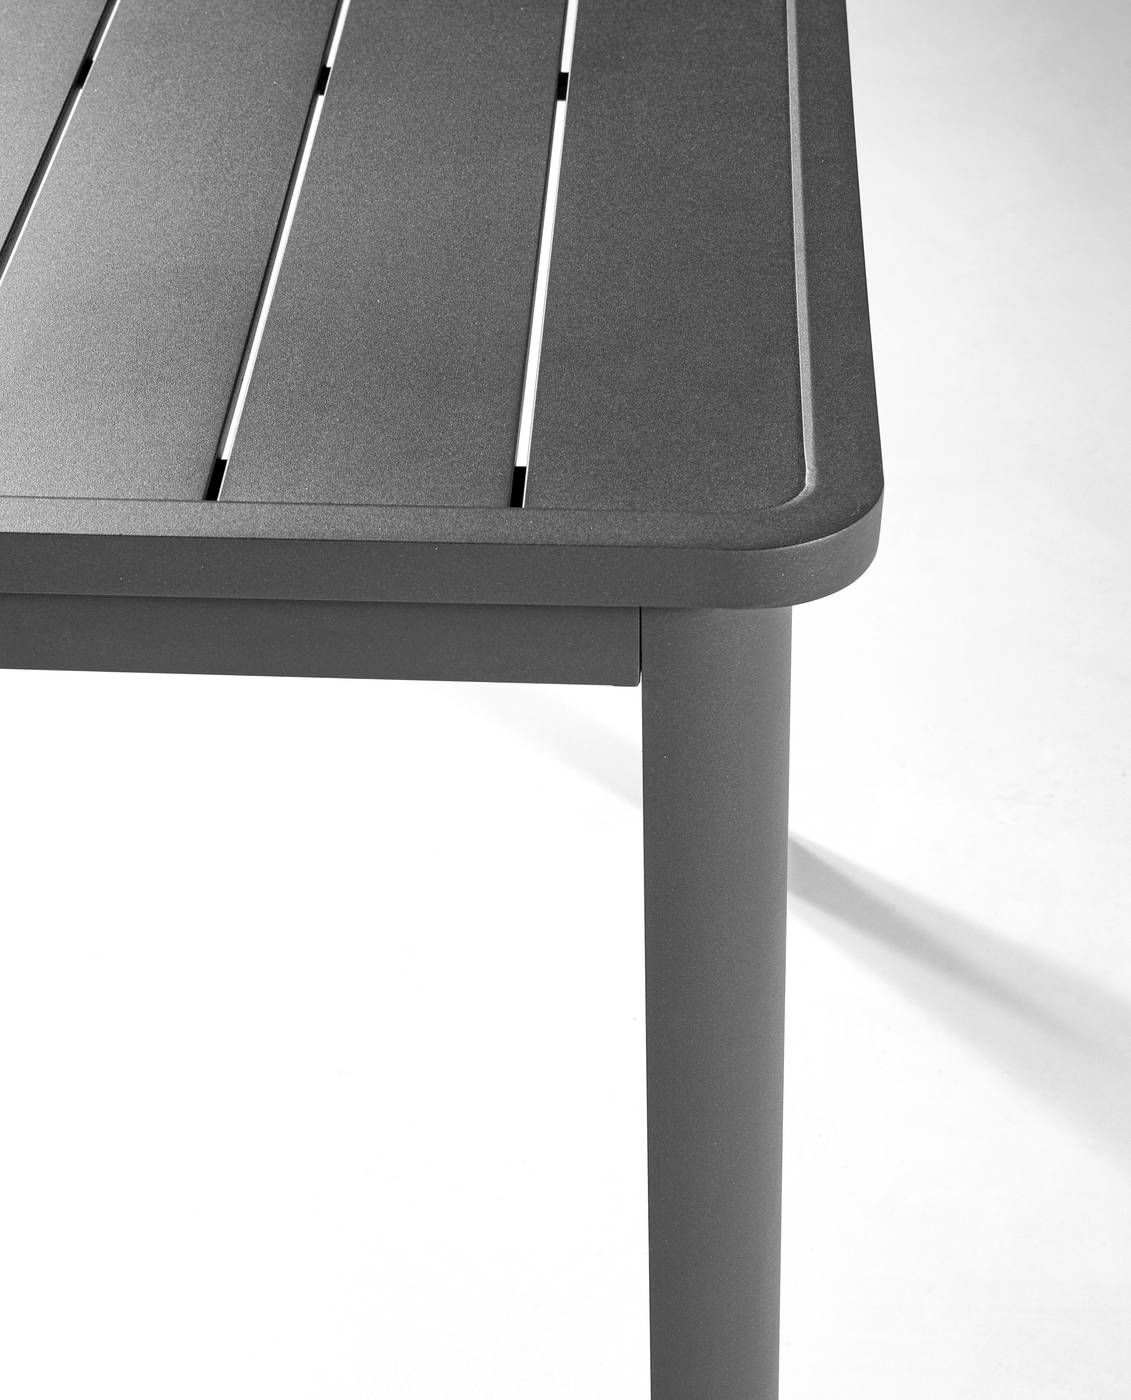 Mesa Cannes Extensible - Mesa rectangular extensible 100% aluminio. Disponible en color antracita o color habana.